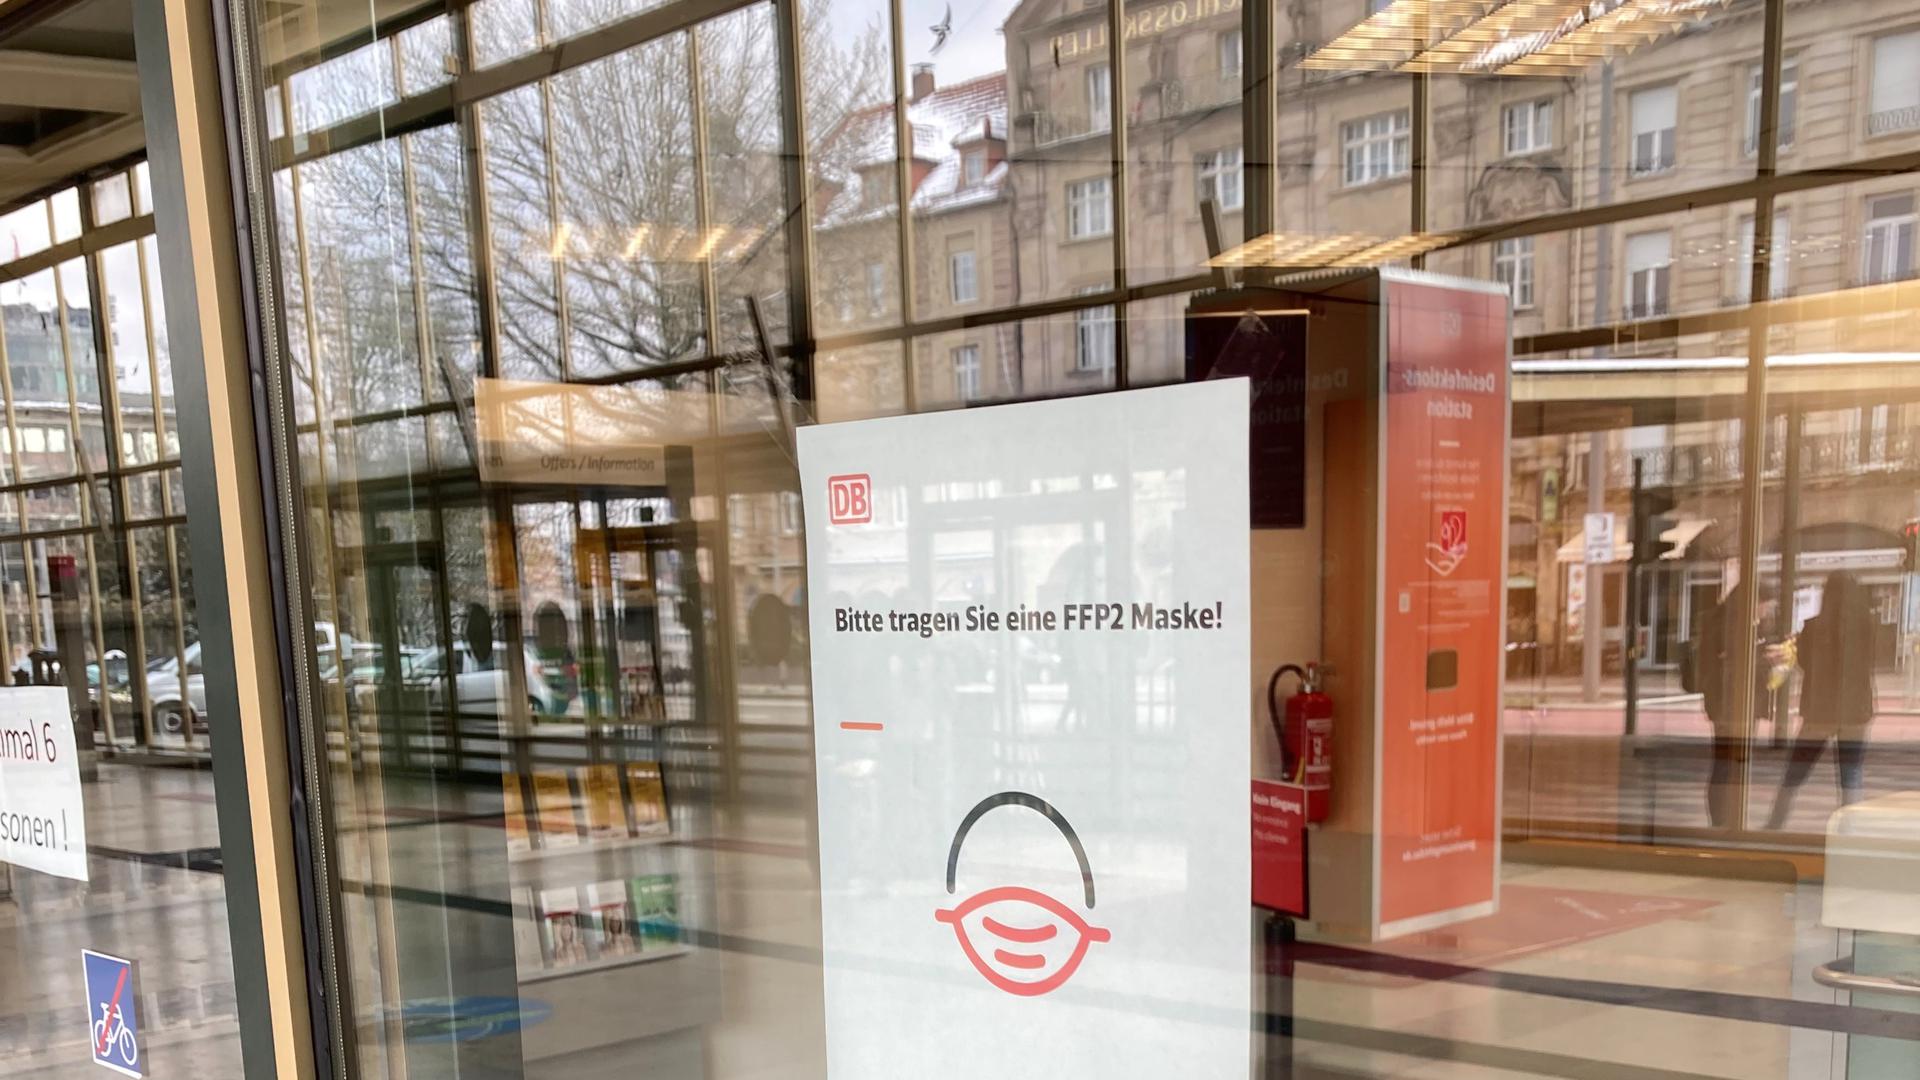 Maskenbitte statt Maskenpflicht: Auf einem Zettel im DB-Reisezentrum im Pforzheimer Hauptbahnhof steht „Bitte tragen Sie eine FFP2-Maske!“. In der Scheibe spiegelt sich der Schlosskeller.